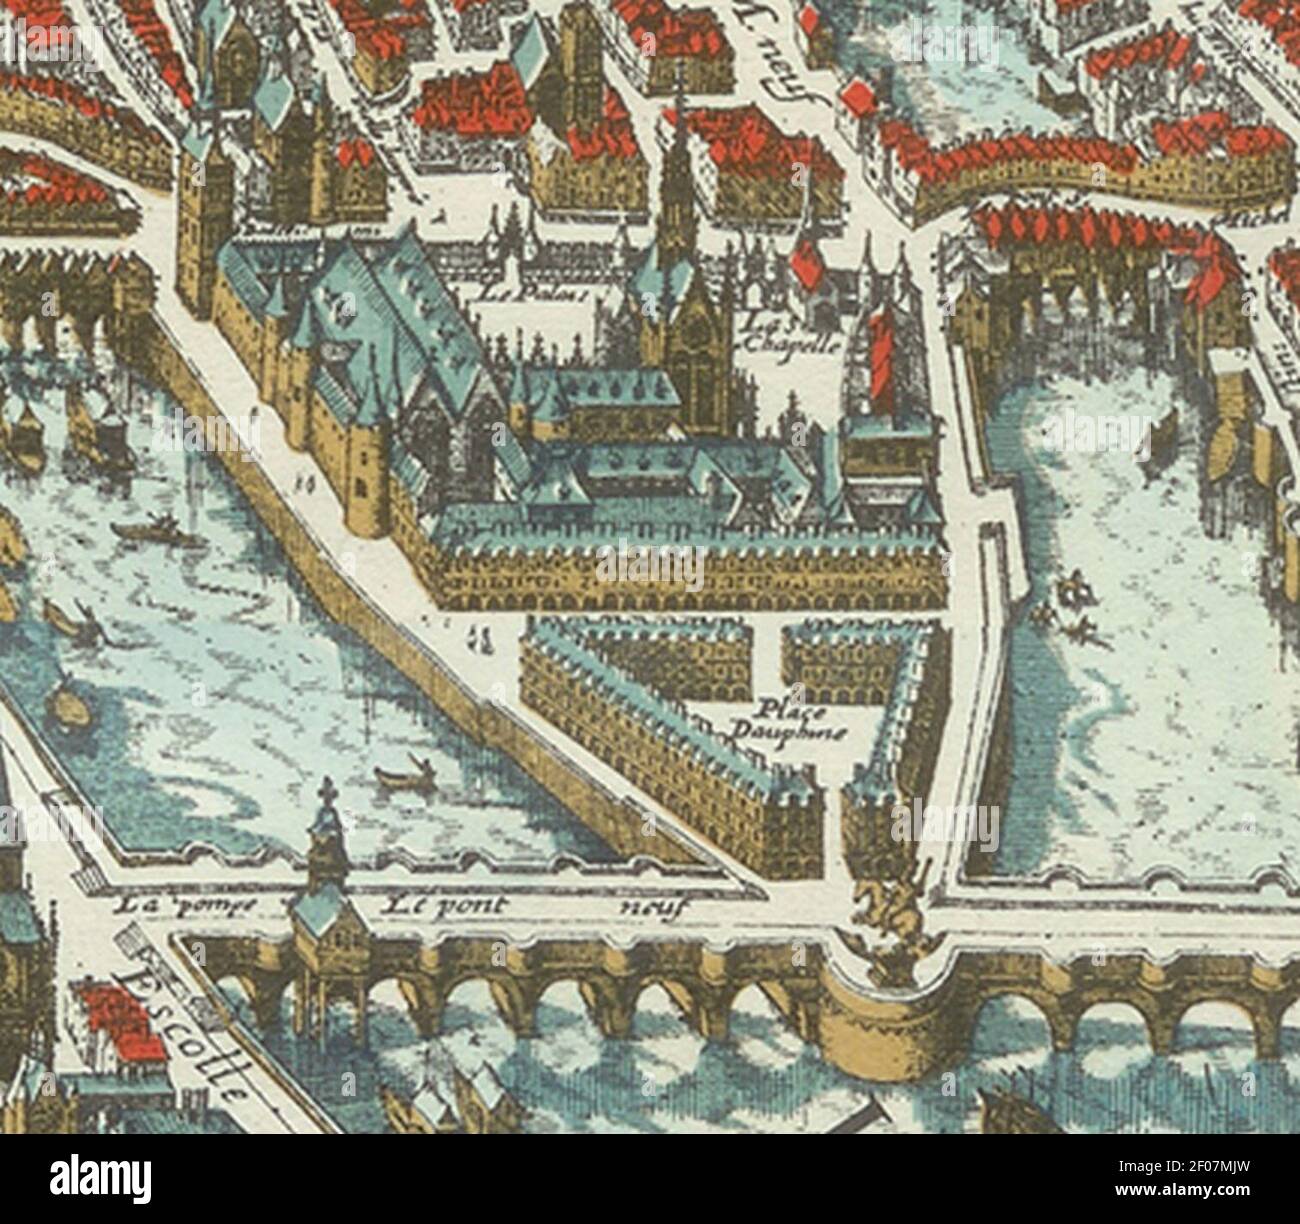 Plan de Mérian 1615 Palais de la Cité. Stock Photo